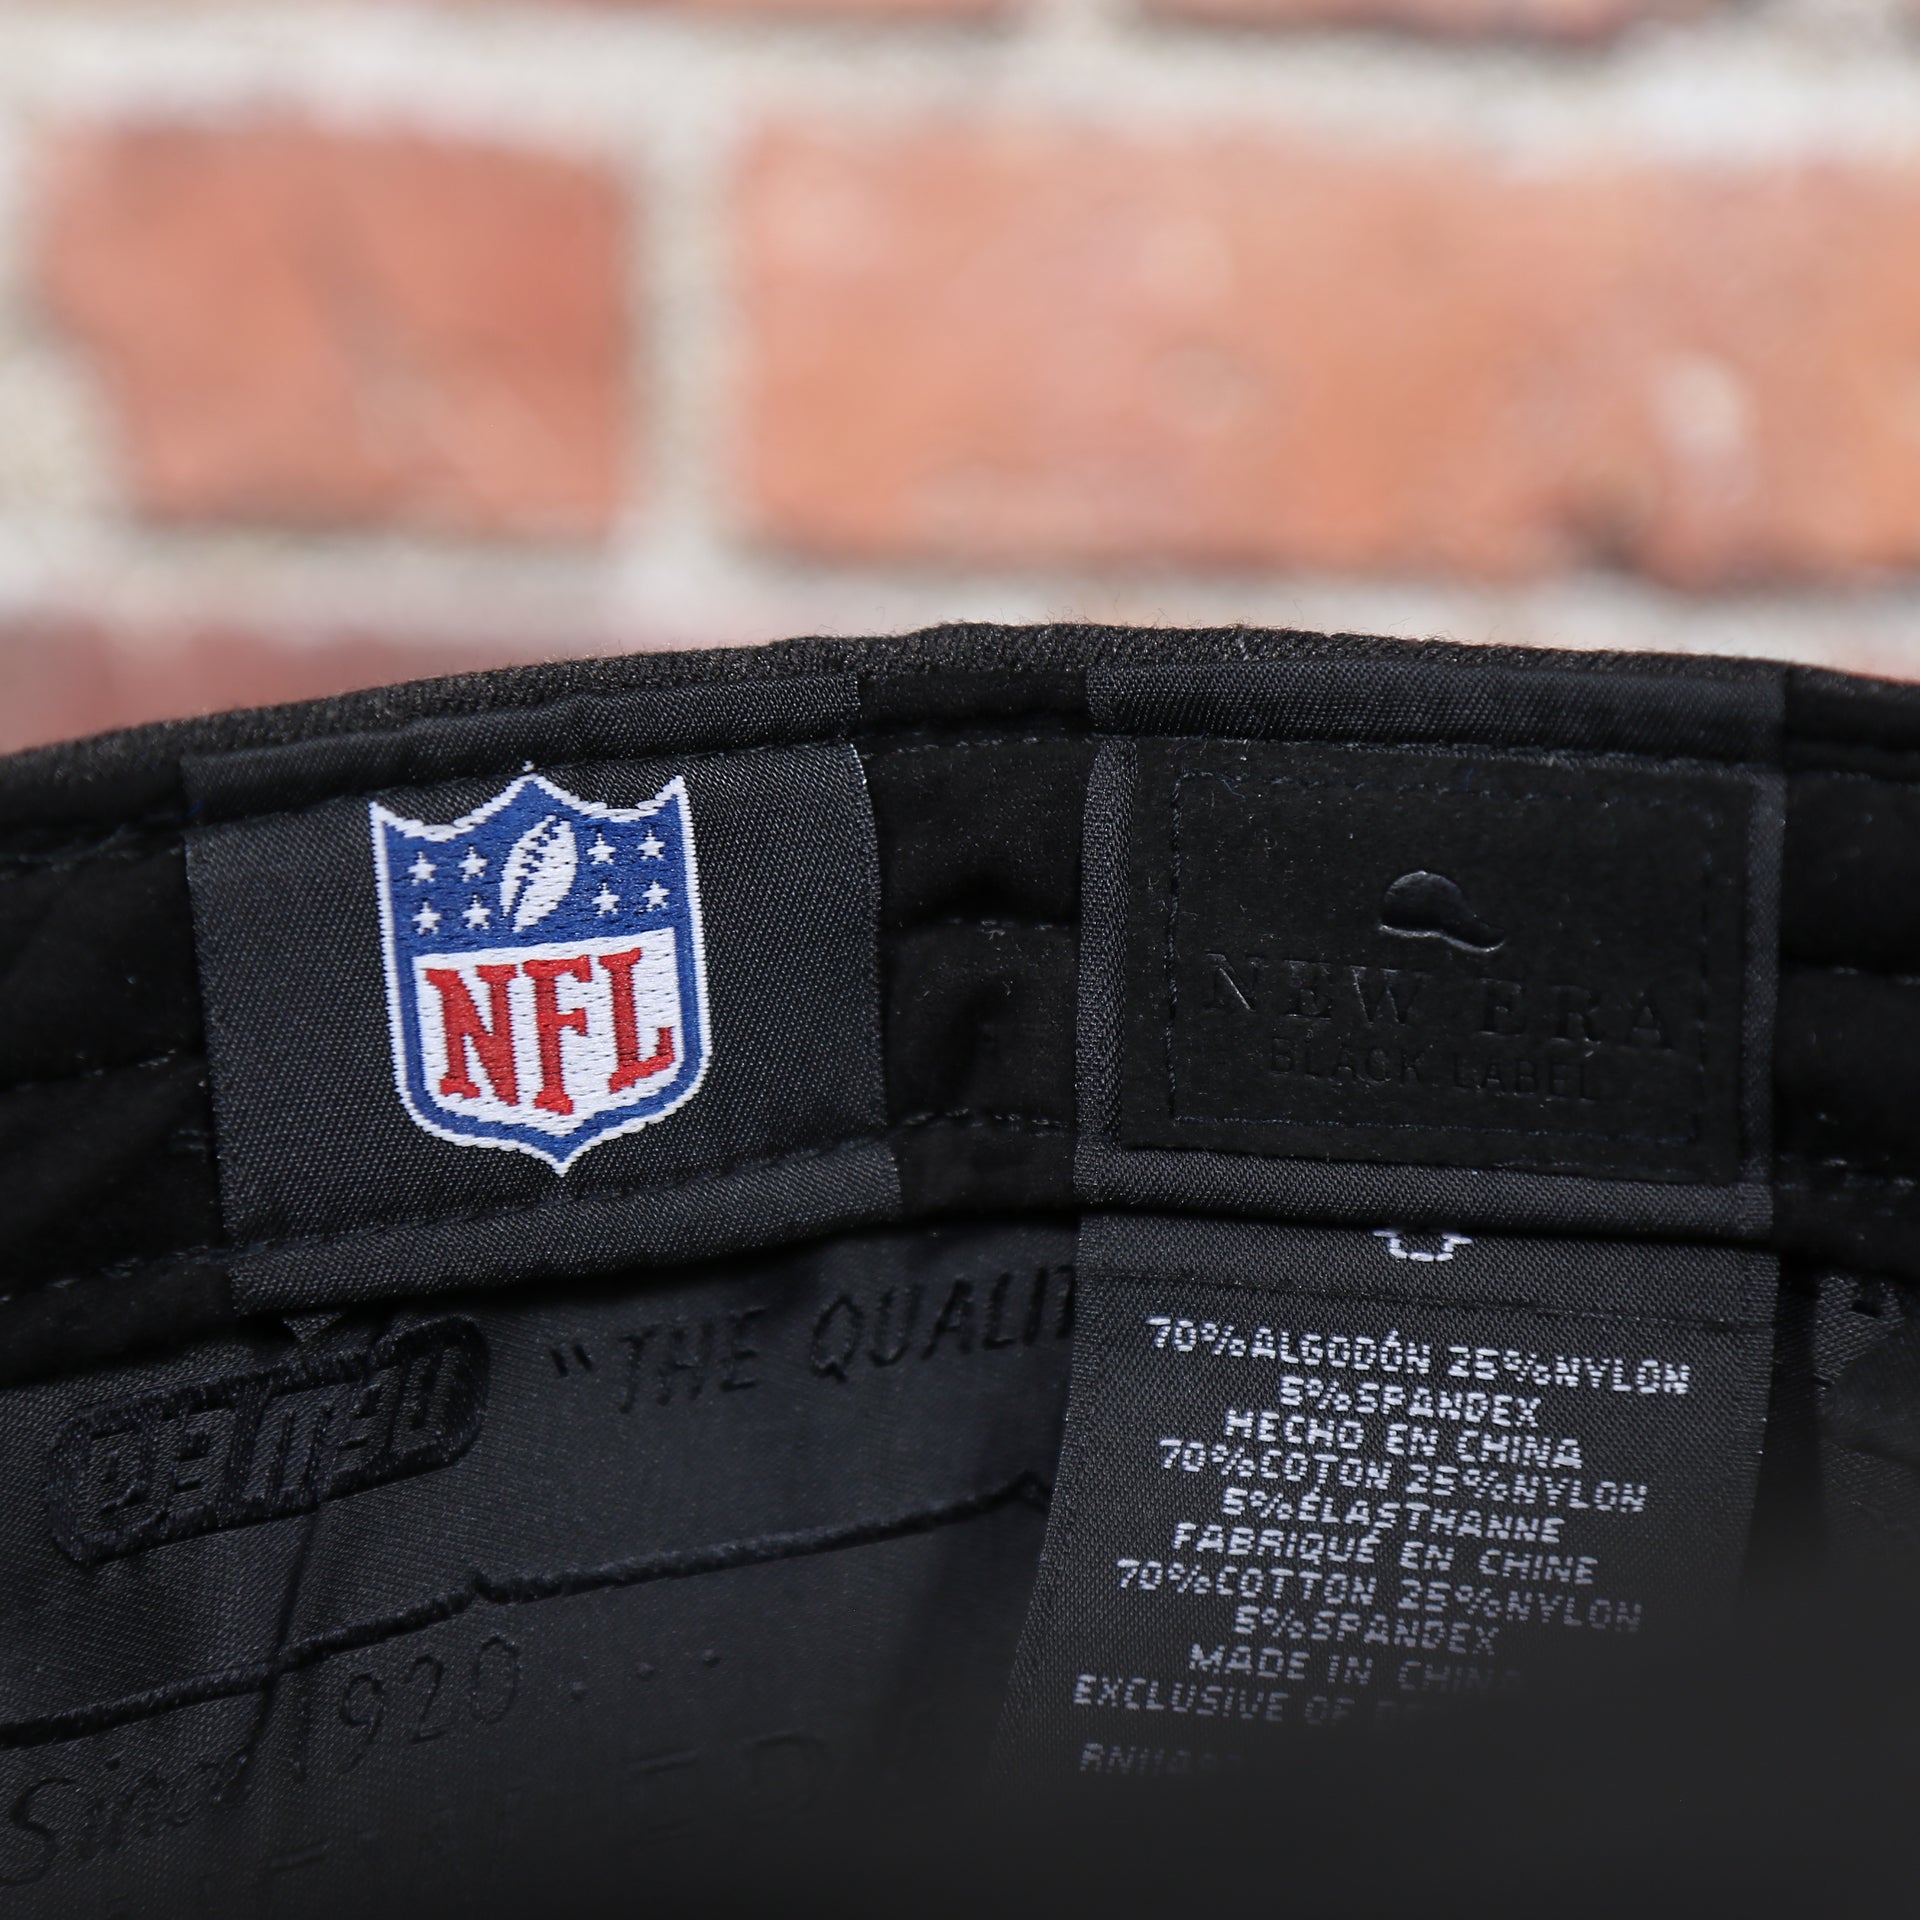 NFL Shield tag on the inside of the Philadelphia Eagles Jeff Cap Black Duckbill Hat | OSFM